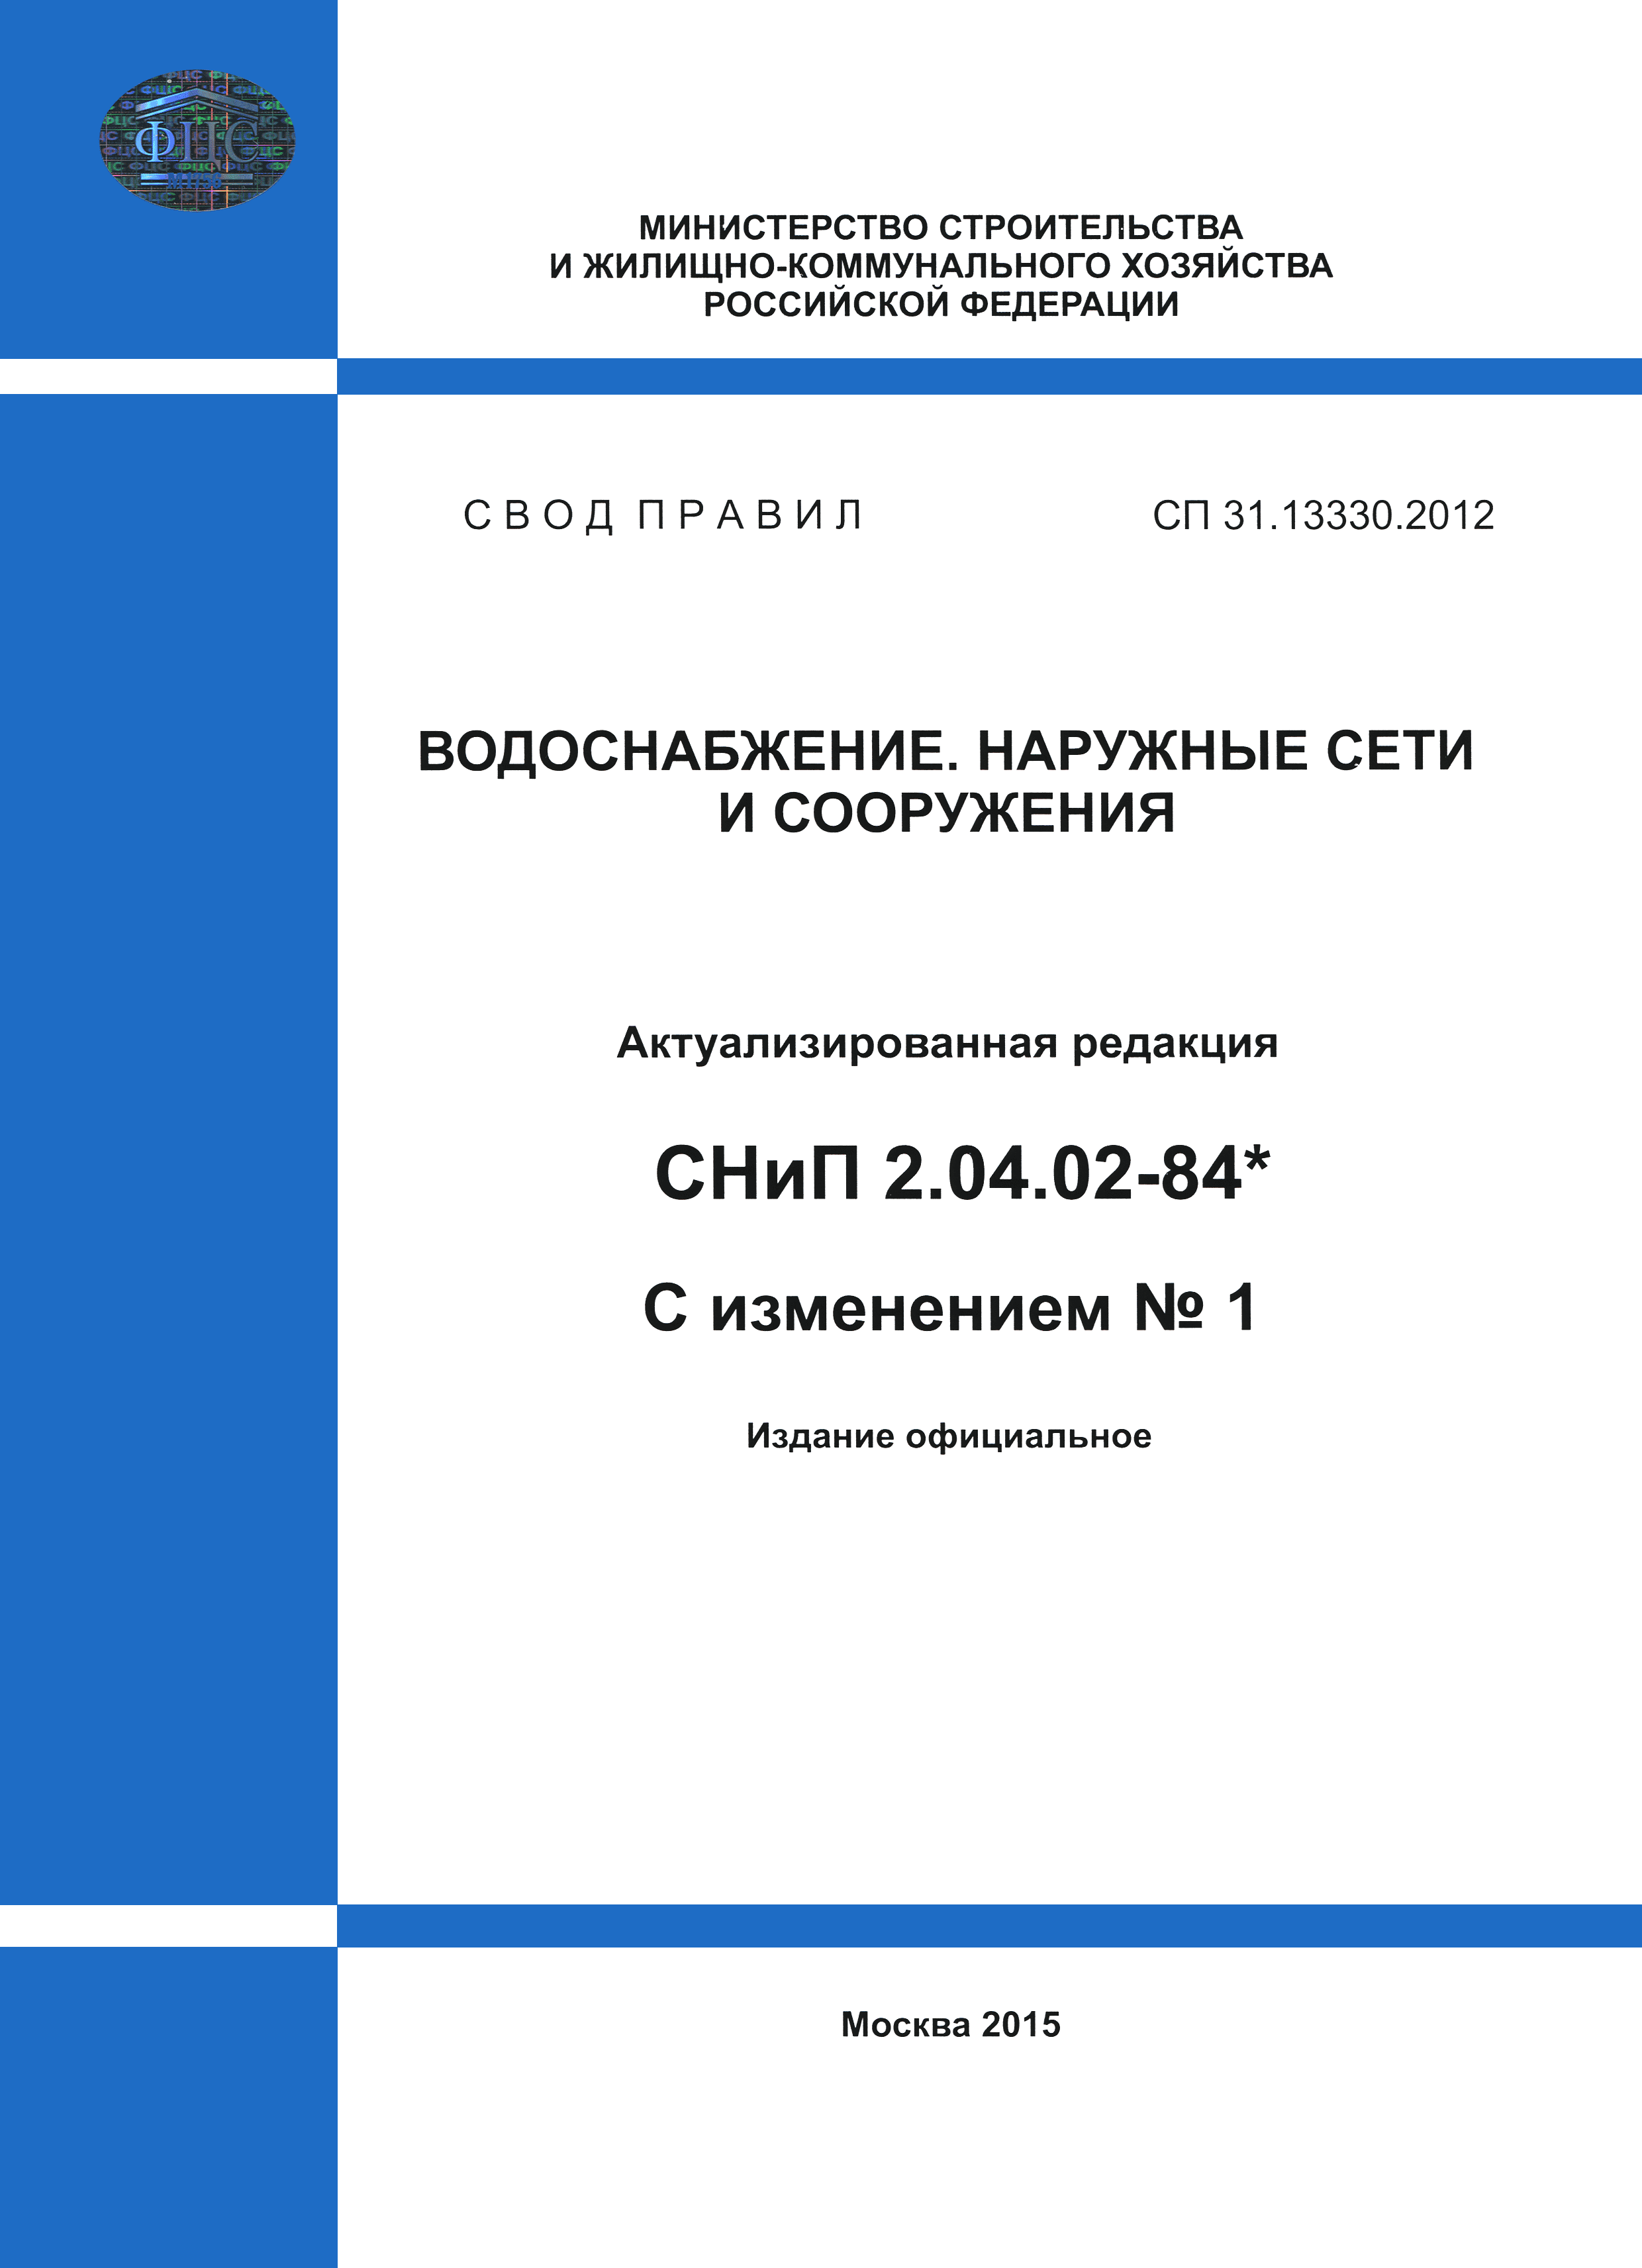 СП 31.13330.2012